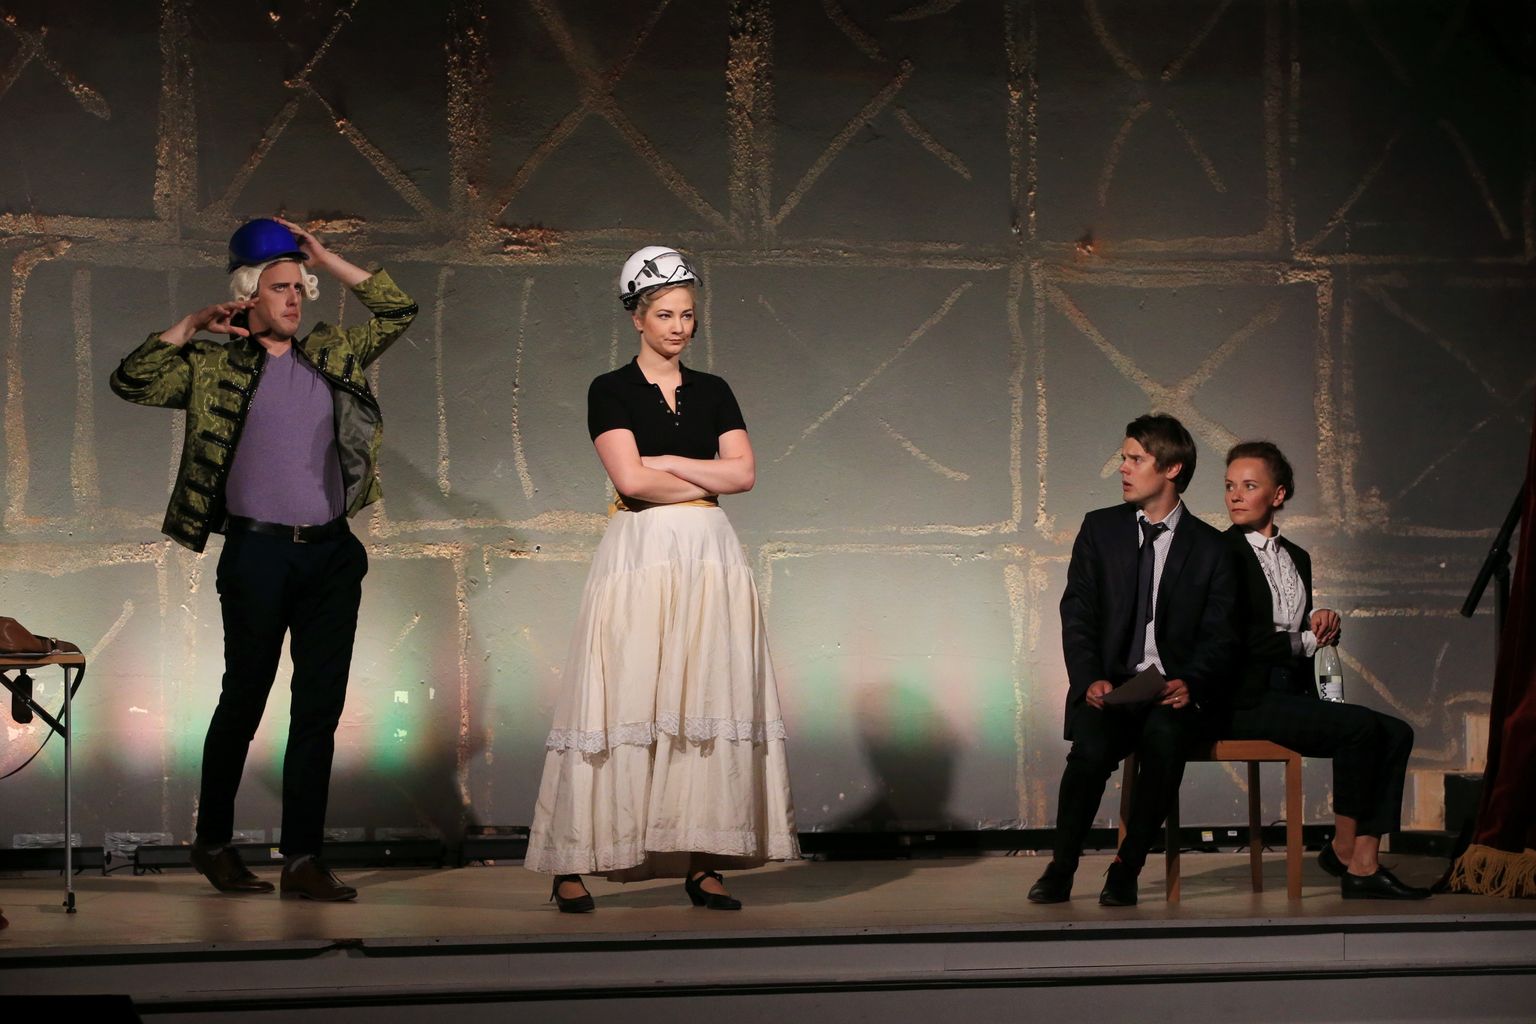 «Figaro pulmas» osalevad Raiko Raalik (vasakult, Figaro), Kadri Kõrvek (Susanna), Priit Strandberg (Vello) ja Maria Annus (Malle).